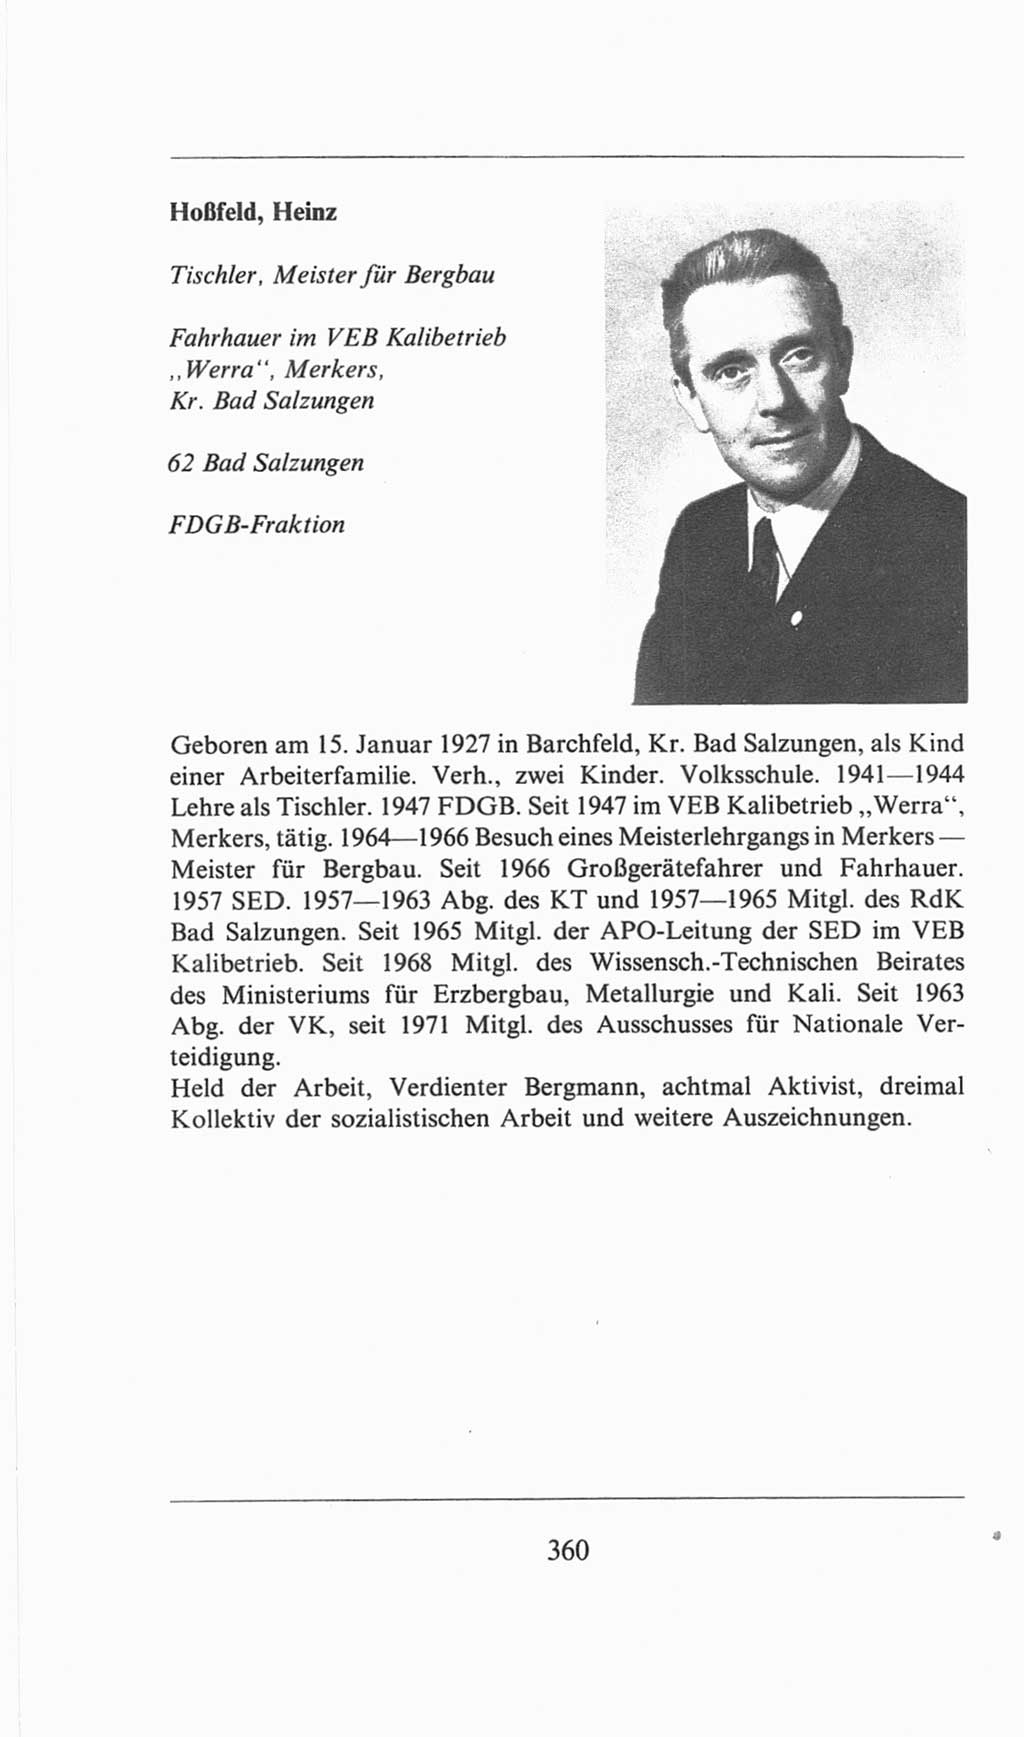 Volkskammer (VK) der Deutschen Demokratischen Republik (DDR), 6. Wahlperiode 1971-1976, Seite 360 (VK. DDR 6. WP. 1971-1976, S. 360)